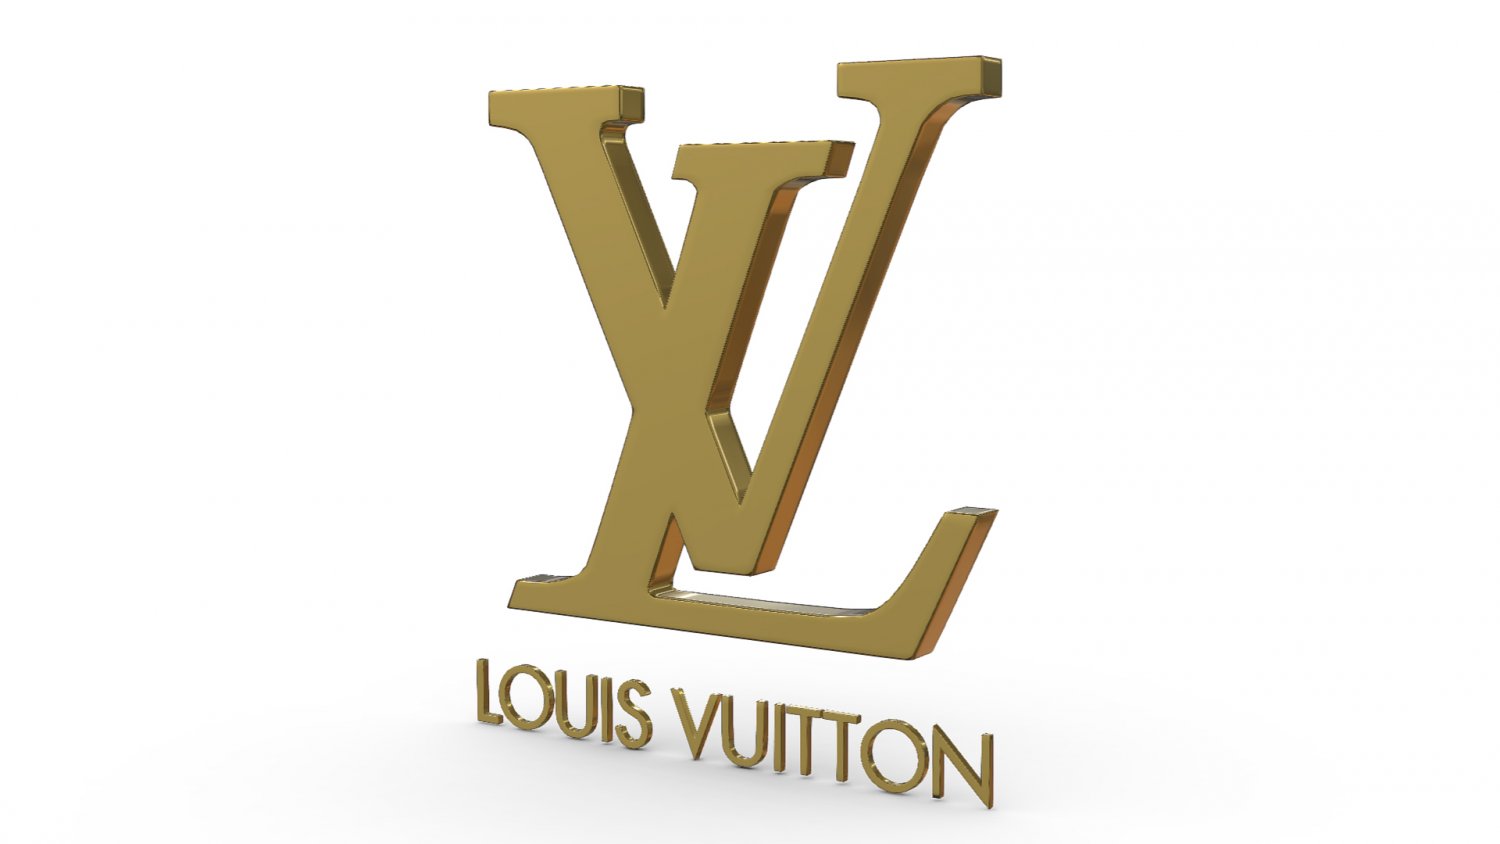 Louis Vuitton Logo Drawing | IQS Executive